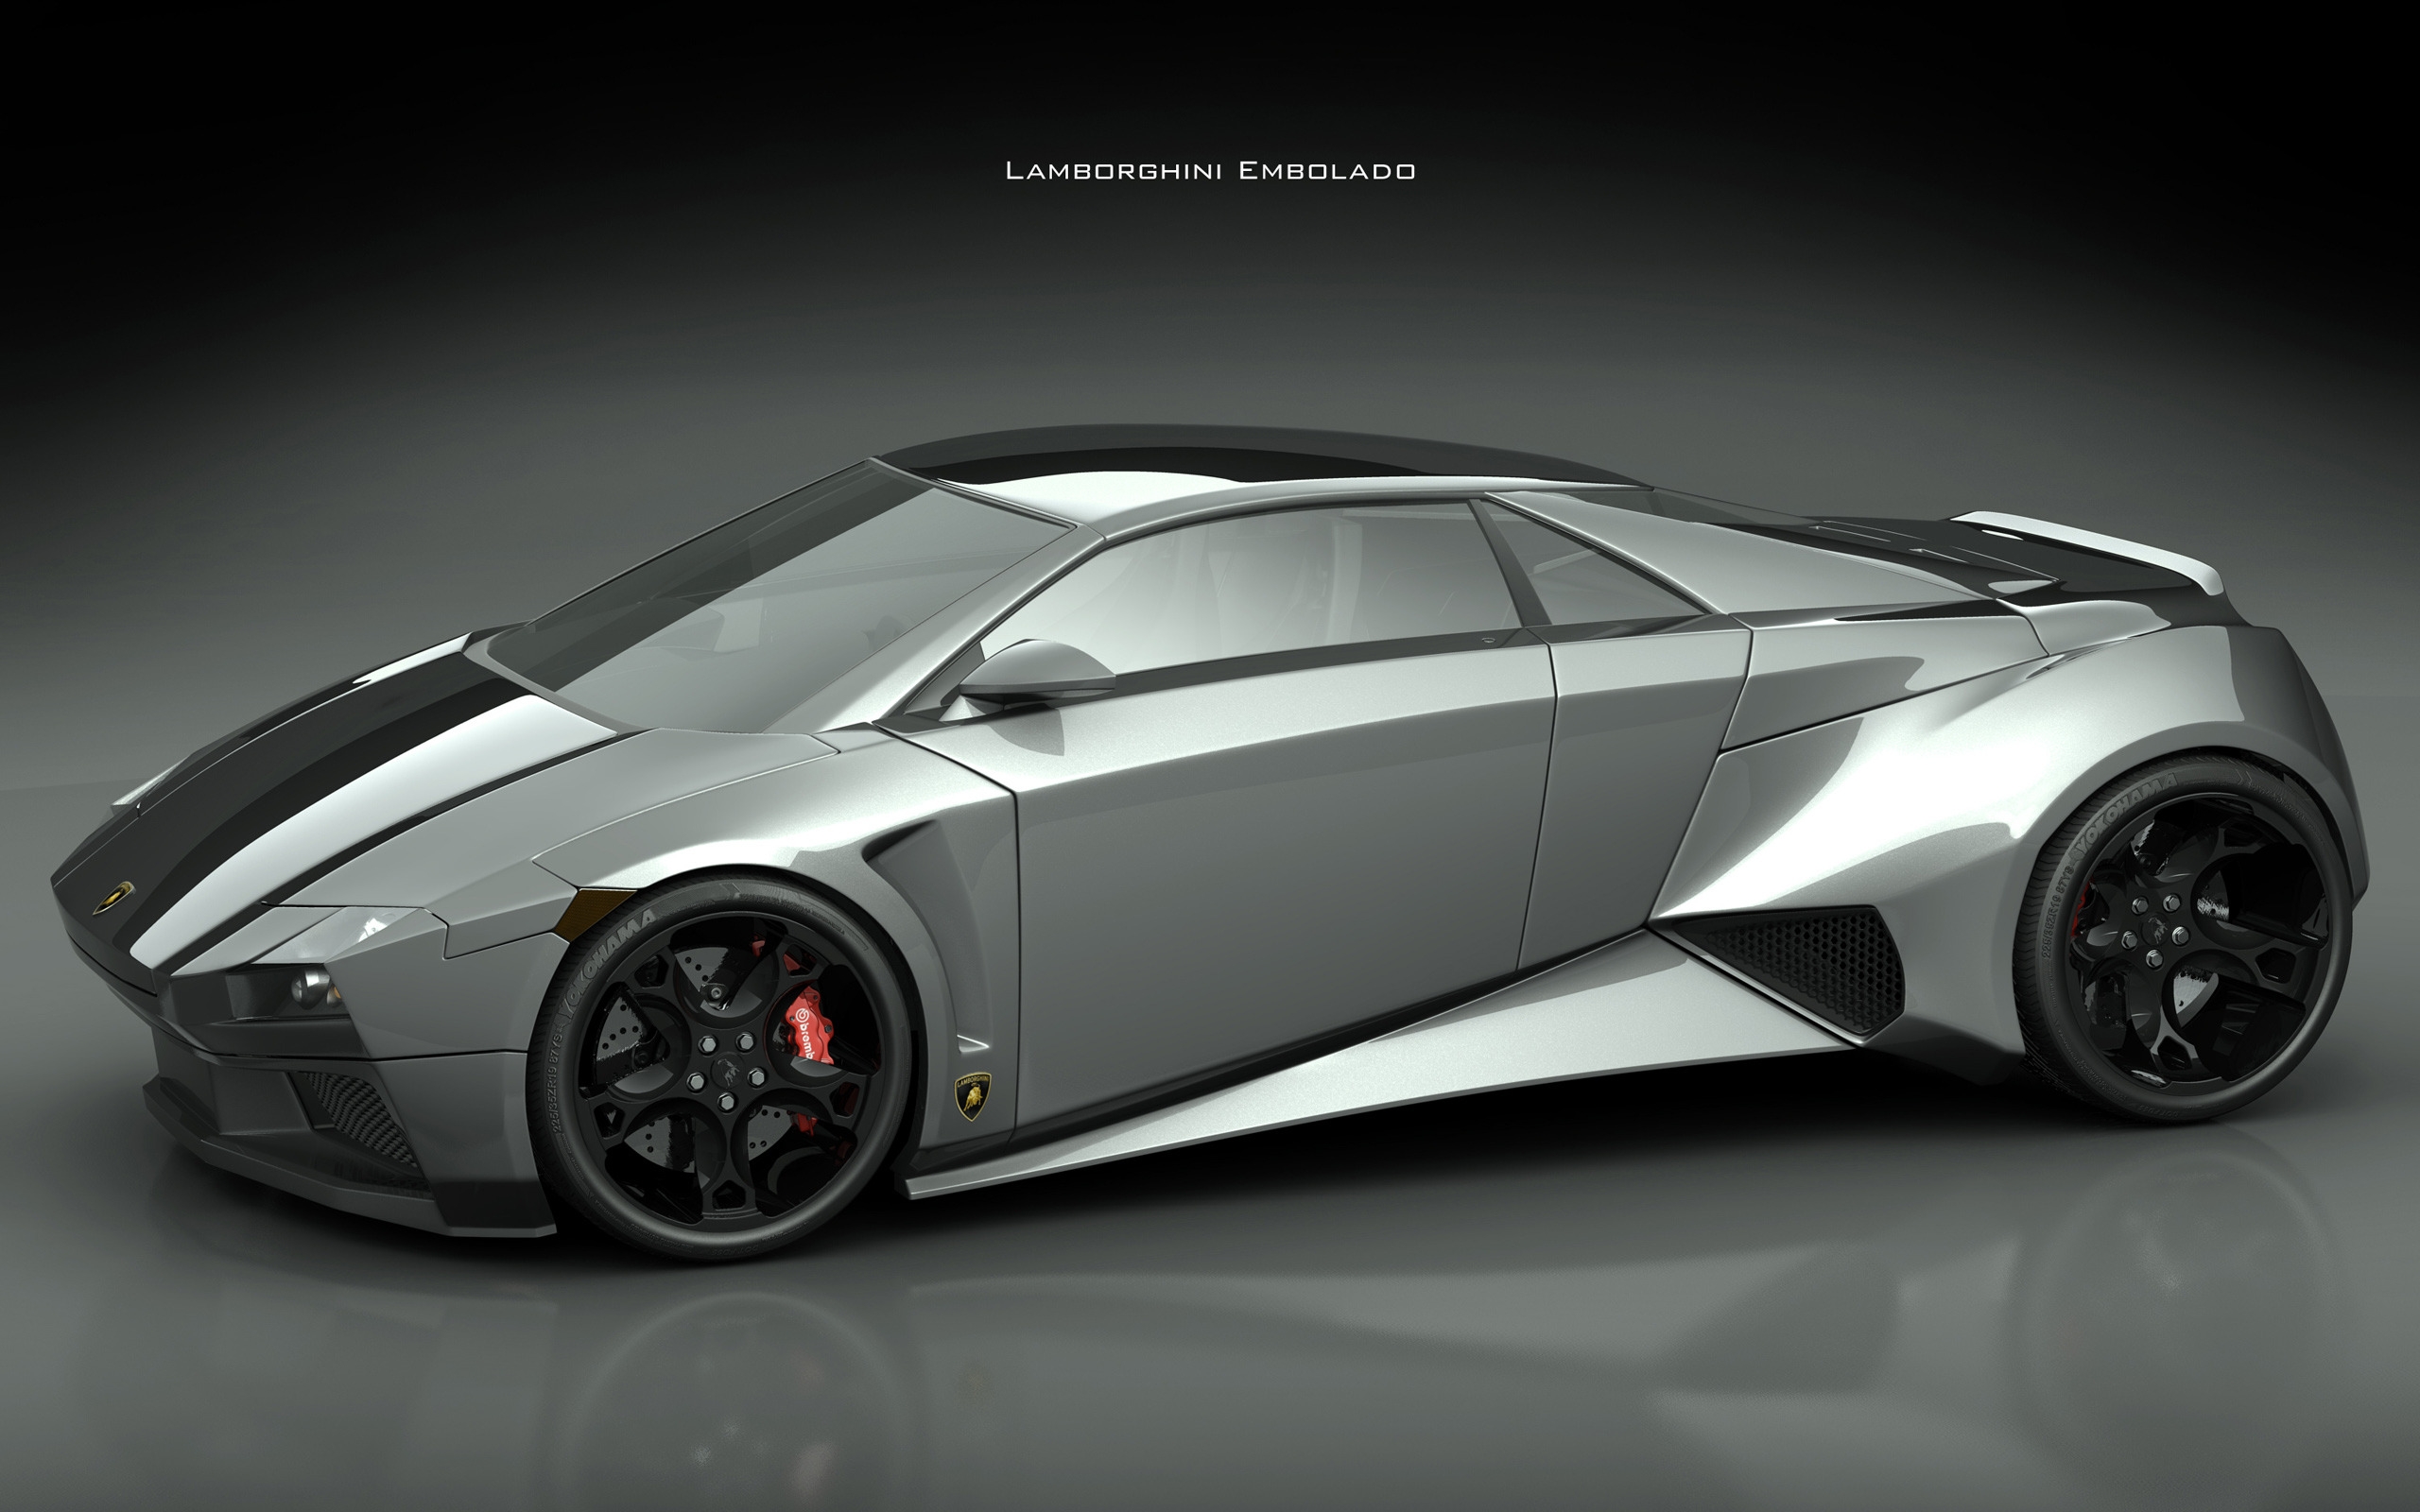 Lamborghini Embolado for 2560 x 1600 widescreen resolution